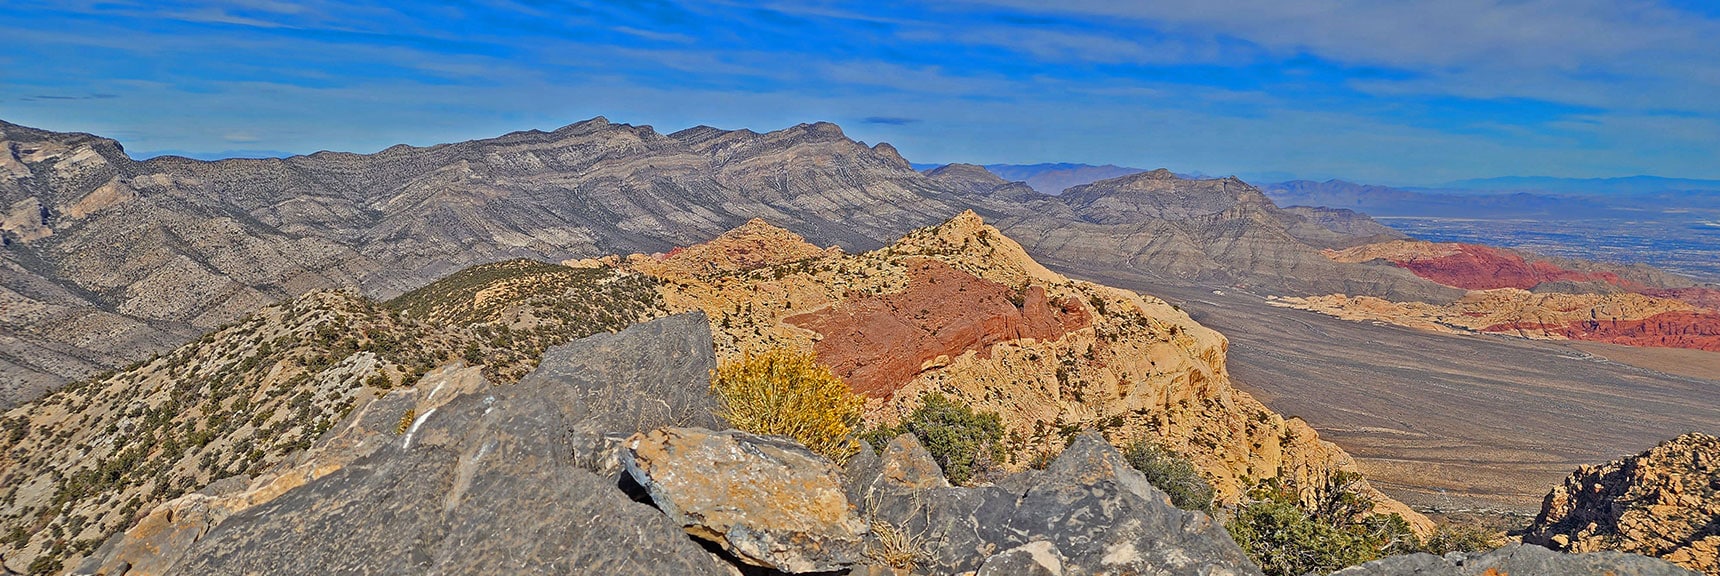 Ridgeline Plateau, Keystone Thrust Cliffs, Damsel Peak and Calico Hills from North Peak | North Upper Crest Ridgeline | Rainbow Mountain Wilderness, Nevada